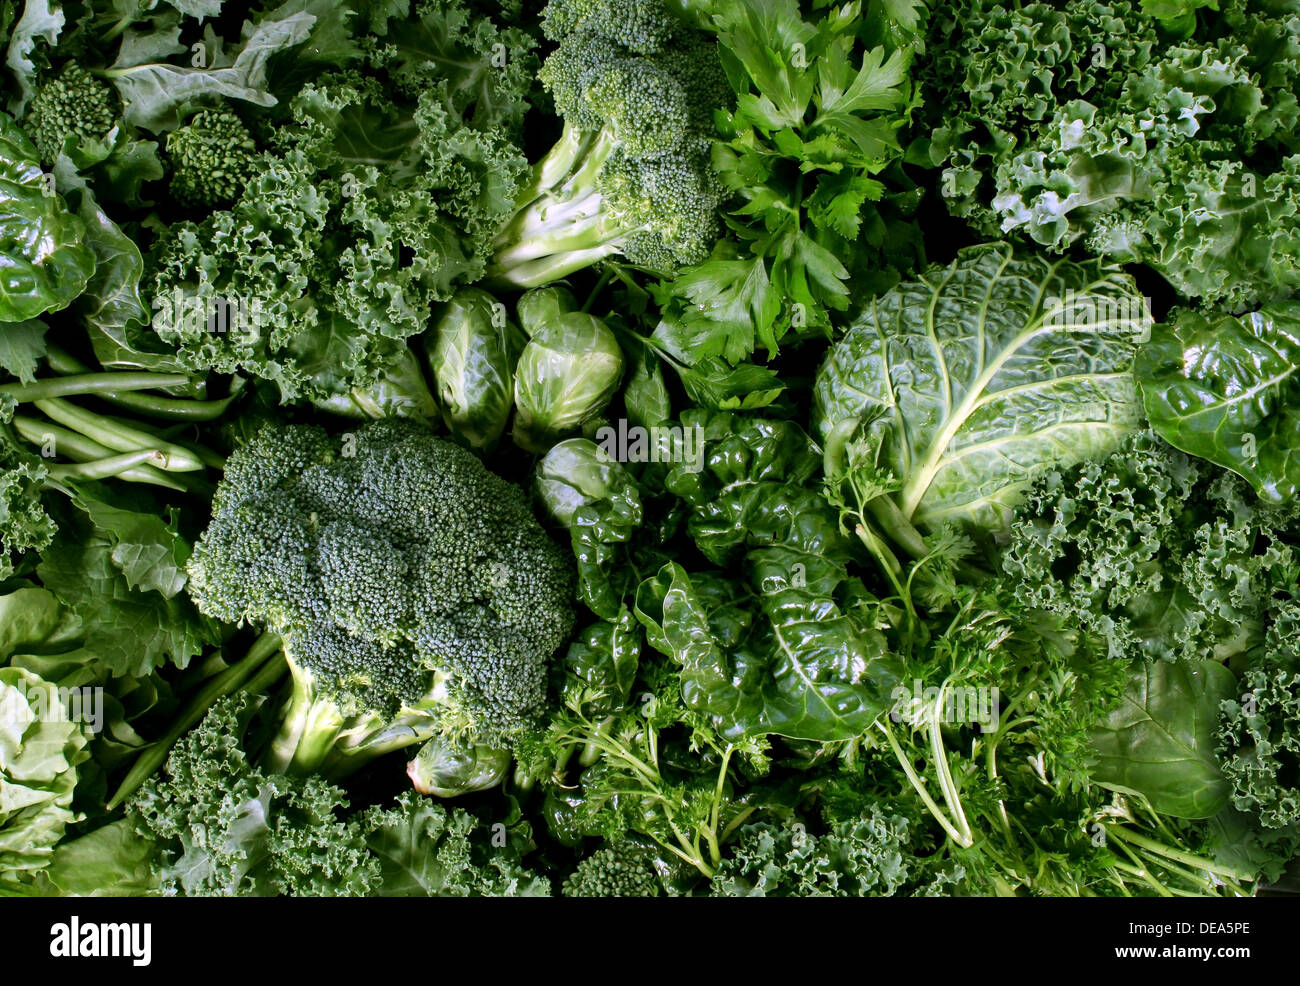 Grüne Gemüse und dunklem Blattgemüse Essen Hintergrund wie eine gesunde Ernährung Konzept der frischen Garten produzieren als Grünkohl Mangold Spinat Kohl Brokkoli und Kohl aus biologischem Anbau als Symbol für Gesundheit. Stockfoto